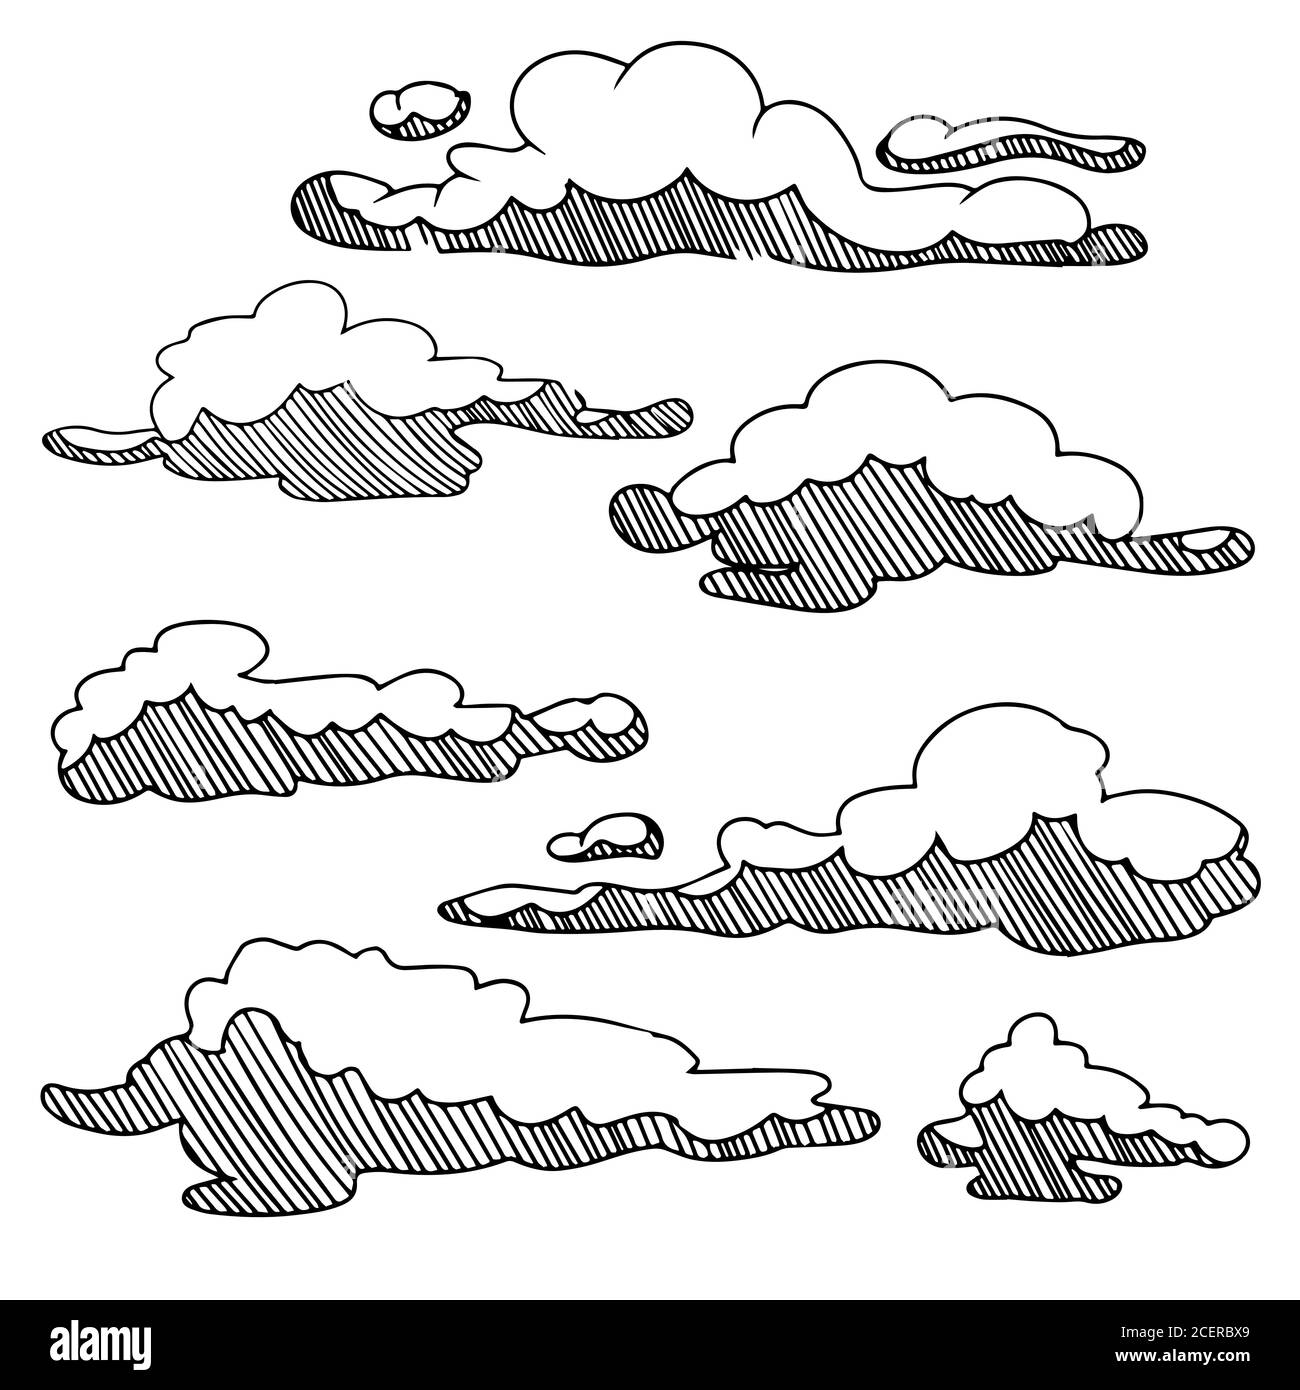 Skizze Sammlung von Wolken in Hand gezeichnet isoliert auf weißem Hintergrund. Vektorgrafik. Stock Vektor